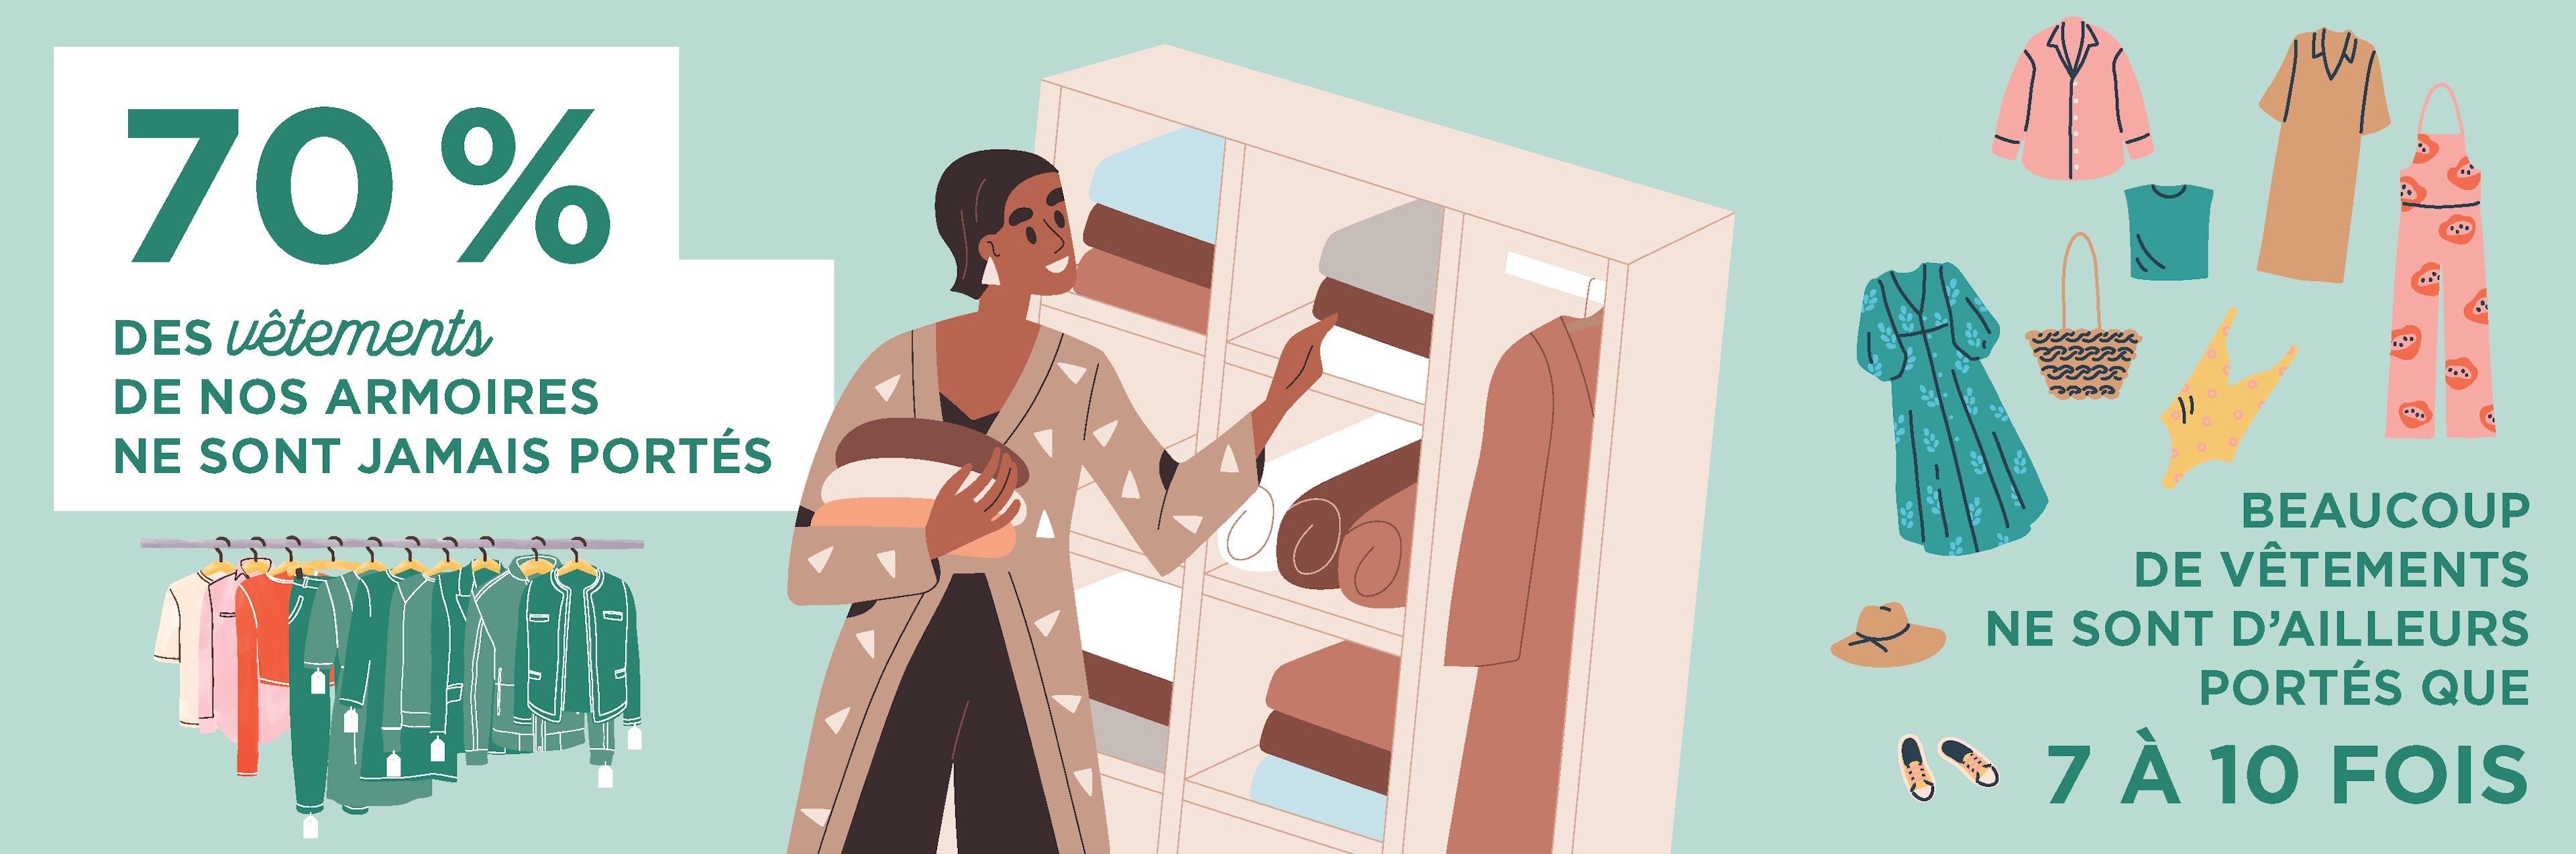 Infographie : 70% des vêtements de nos armoires ne sont jamais portés